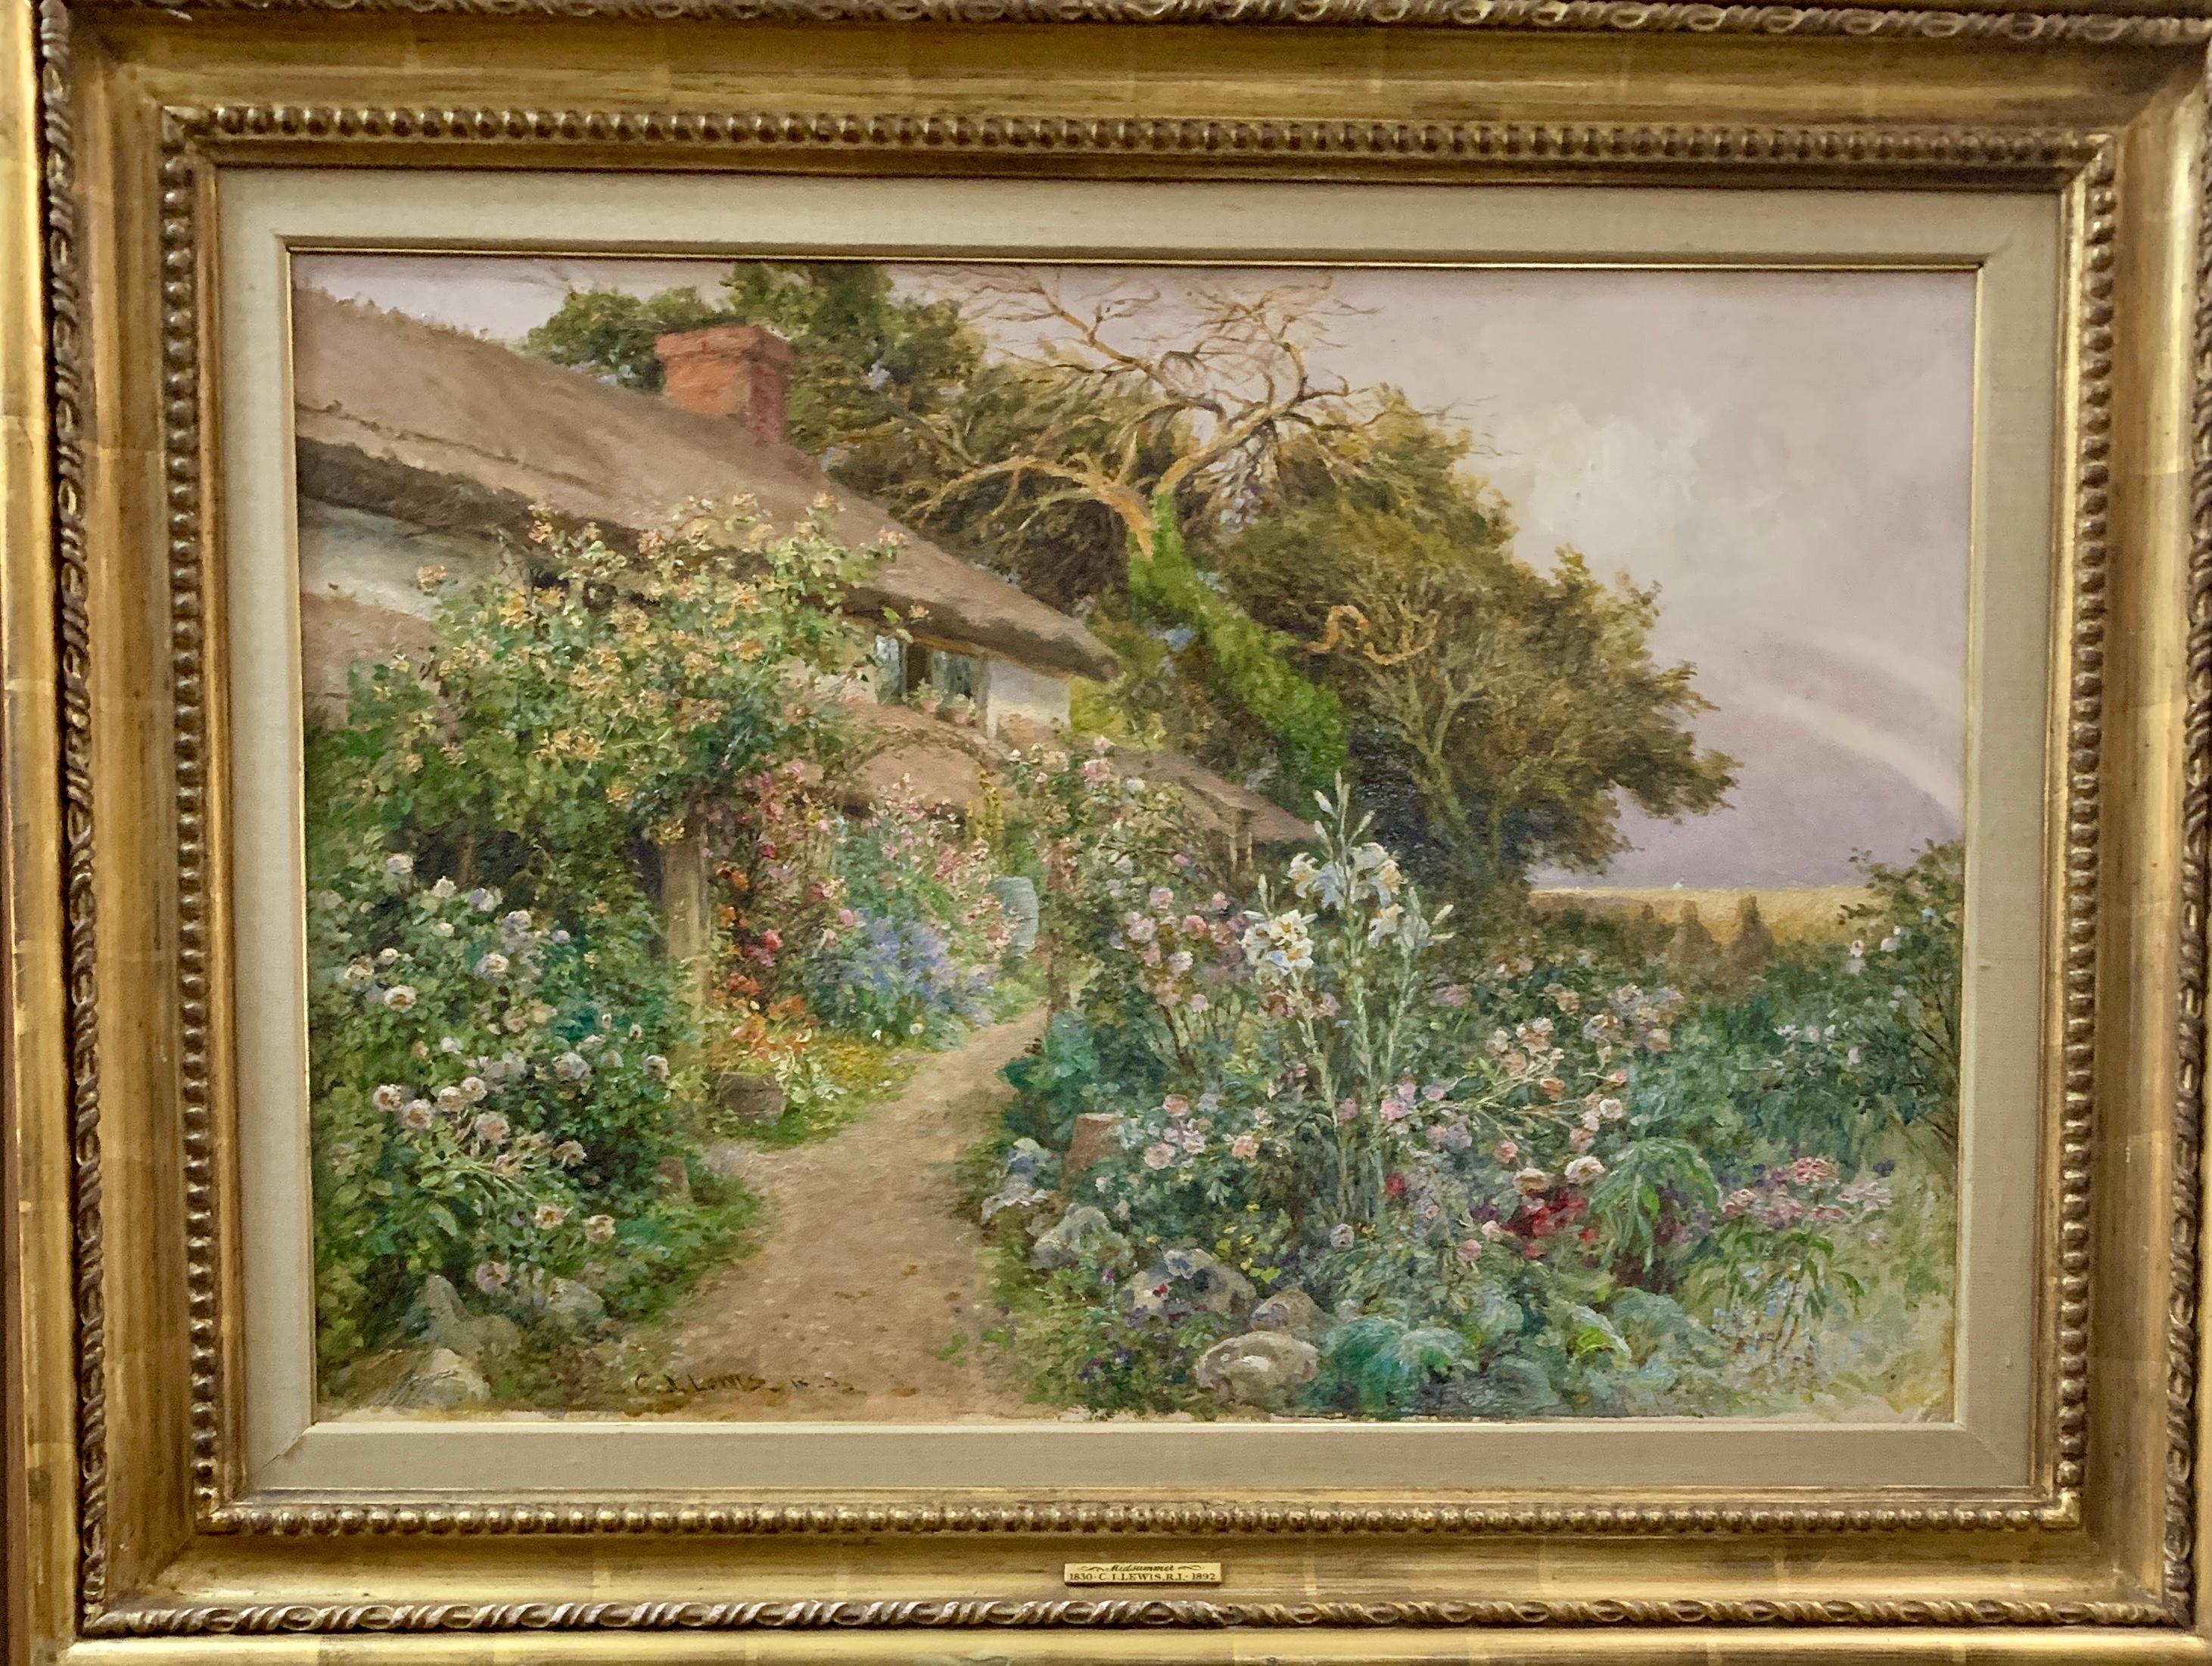 Figurative Painting Charles James Lewis - Paysage de jardin victorien anglais du 19ème siècle, avec fleurs